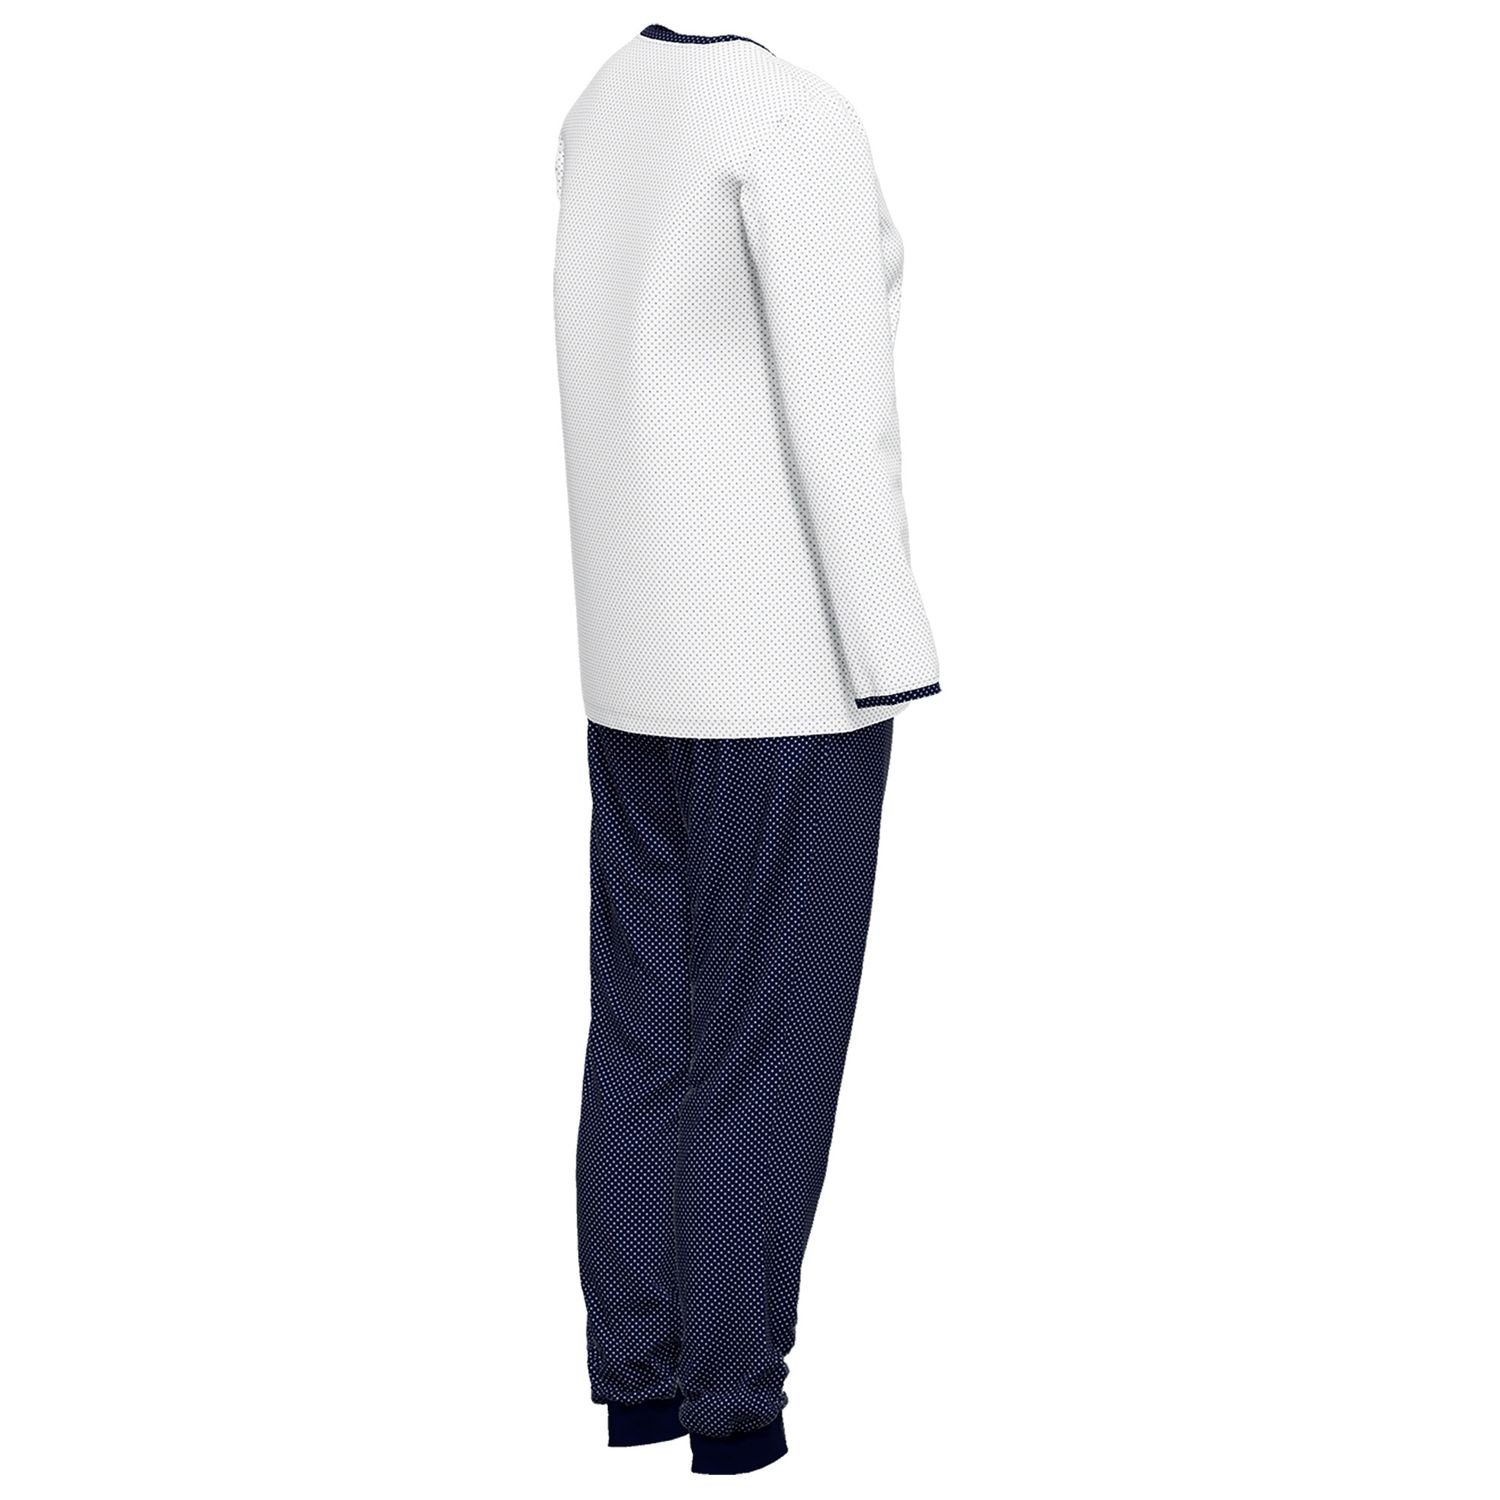 GÖTZBURG Schlafanzug mit Henley-Auschnitt, Knöpfe, weich, gepunktet langarm, / reine Baumolle bequem, navy weiß